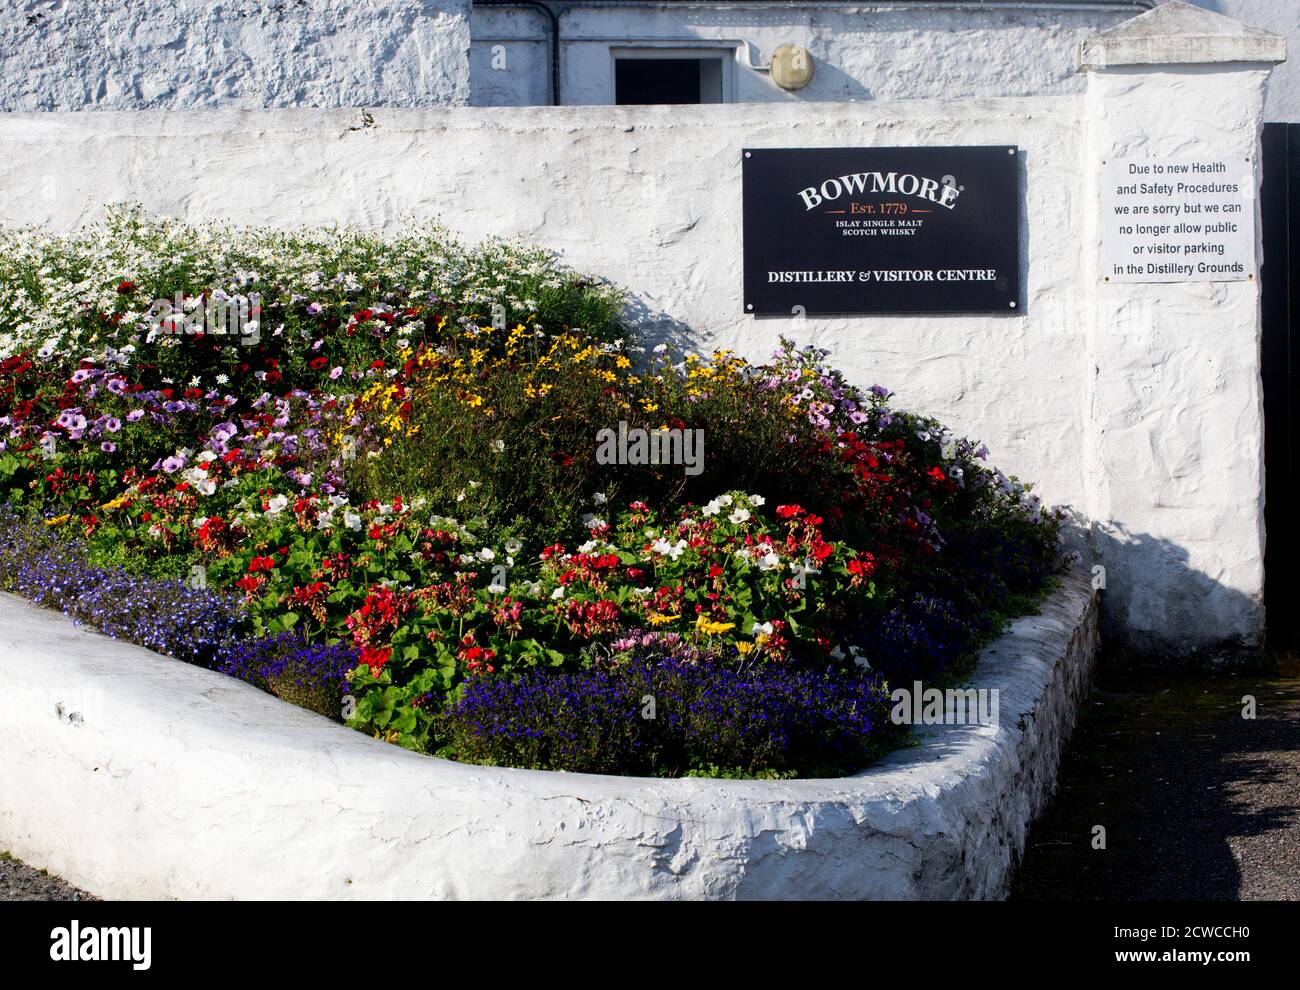 Distillerie de whisky Bowmore, Islay, Écosse Banque D'Images